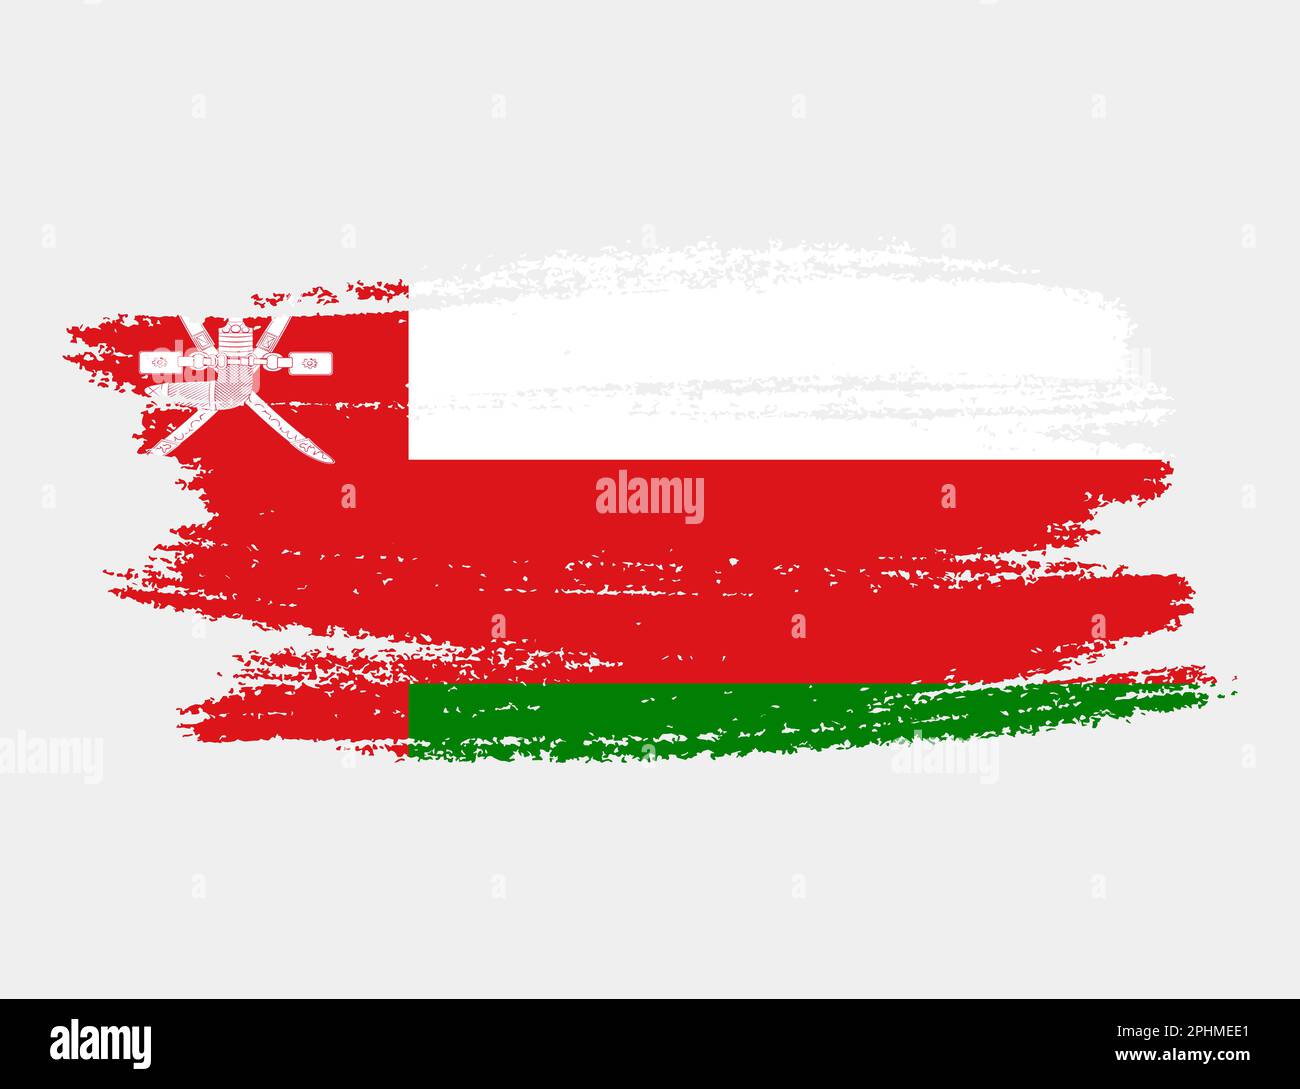 Grunge artistique drapeau de forme d'Oman isolé sur fond blanc. Texture élégante du drapeau national Illustration de Vecteur